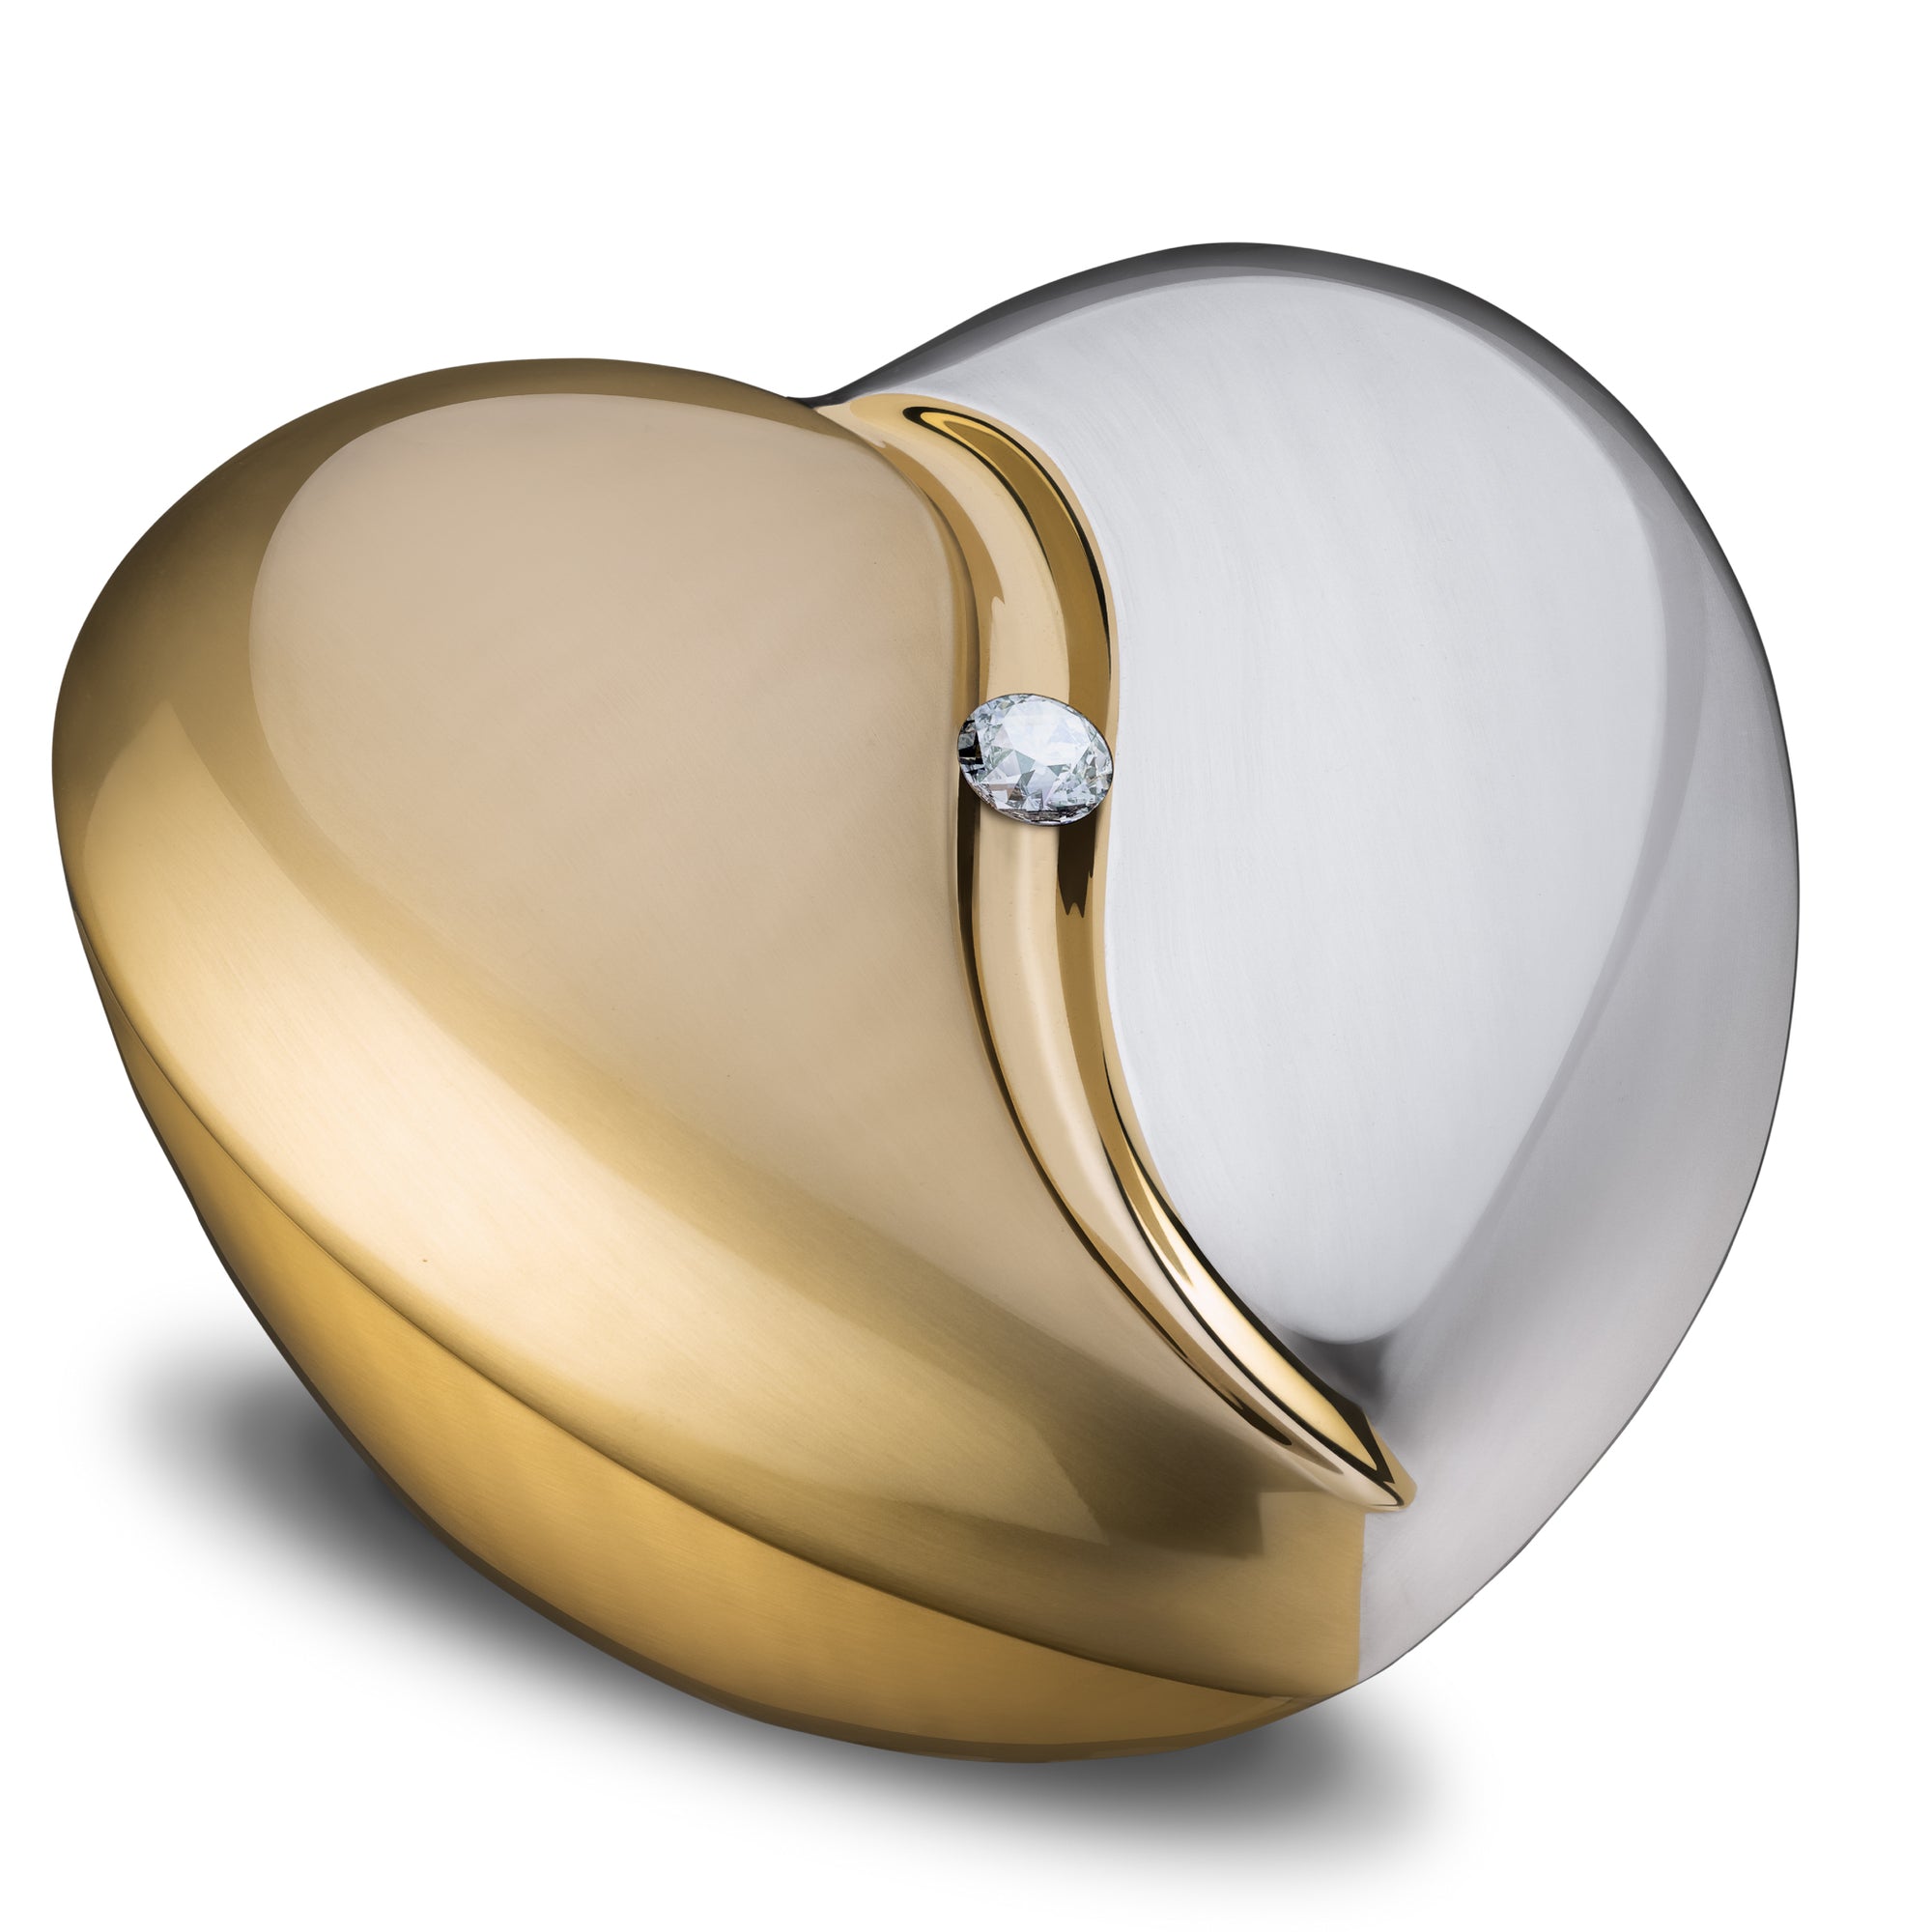 HeartFeltª Standard Adult Urn Brushed Gold With Crystal